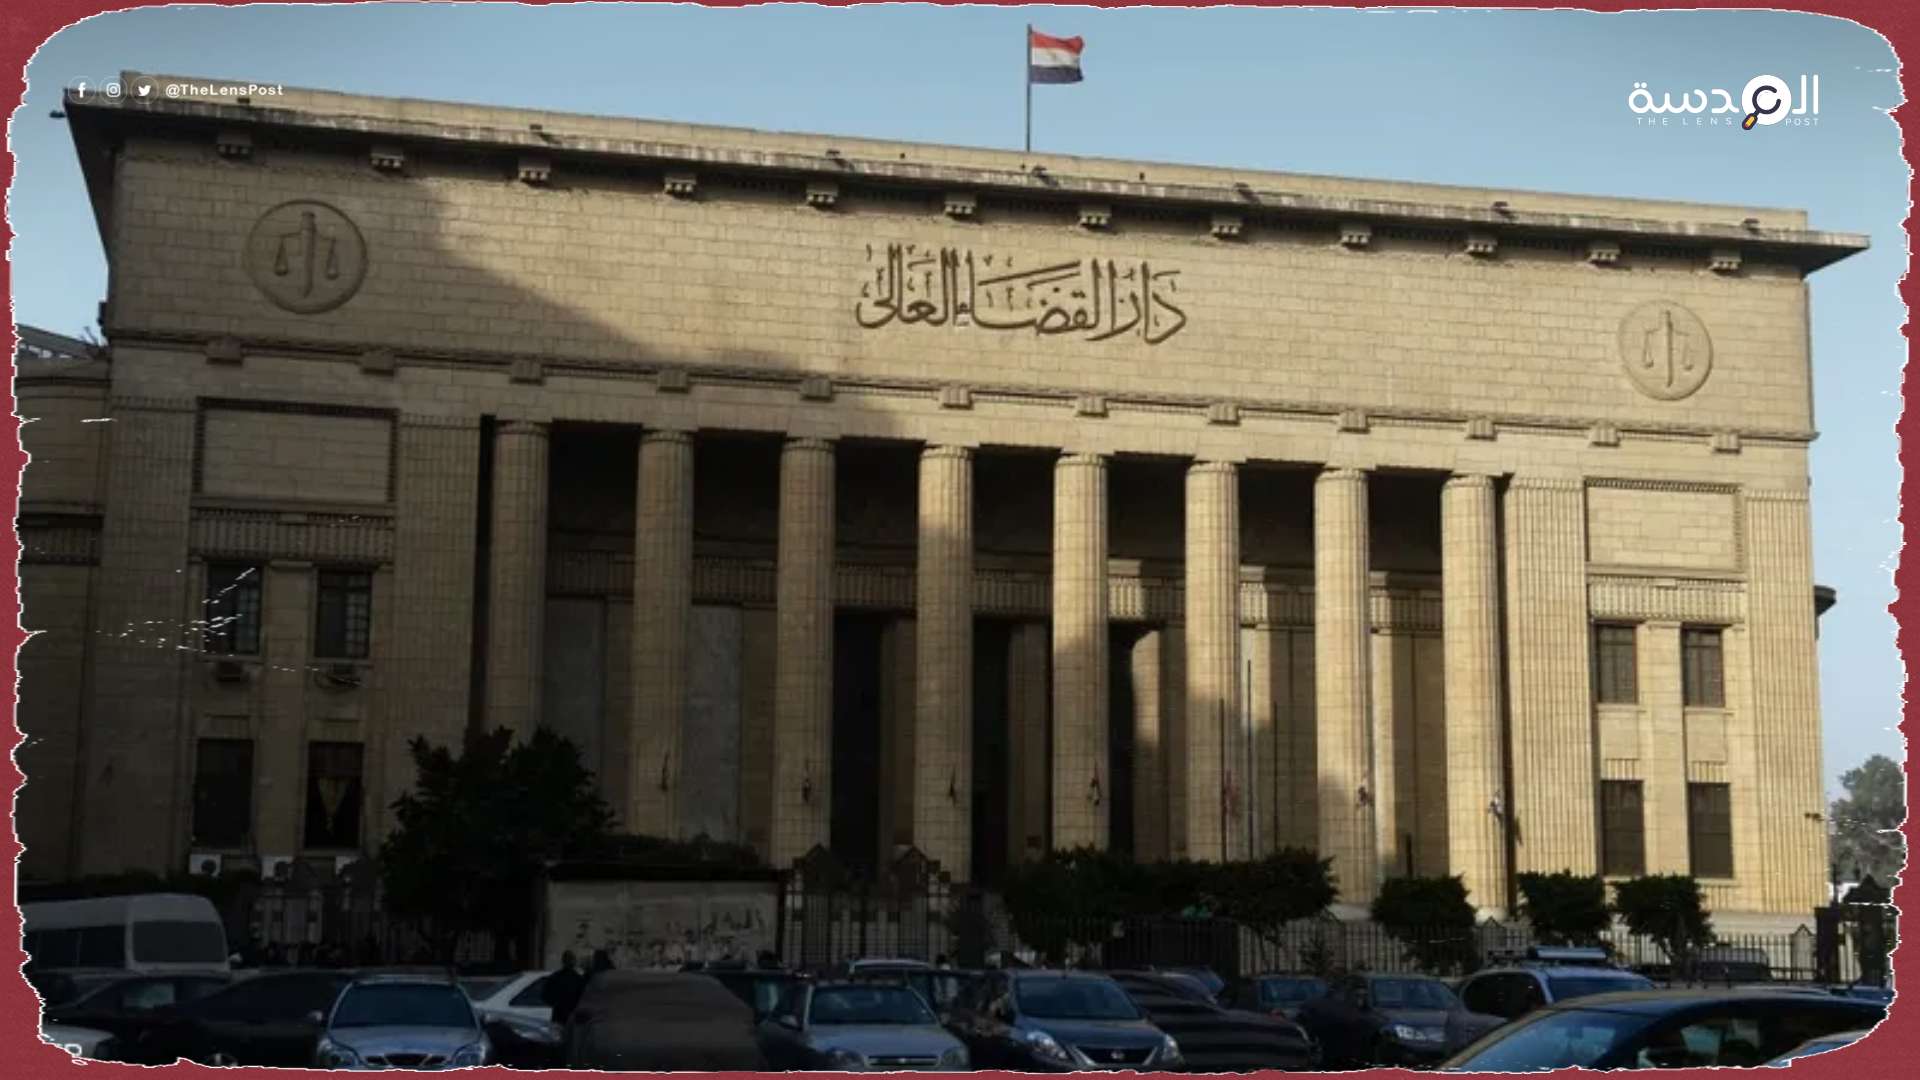 السلطات المصرية تستخدم محاكم الطوارئ لاستهداف المعارضين